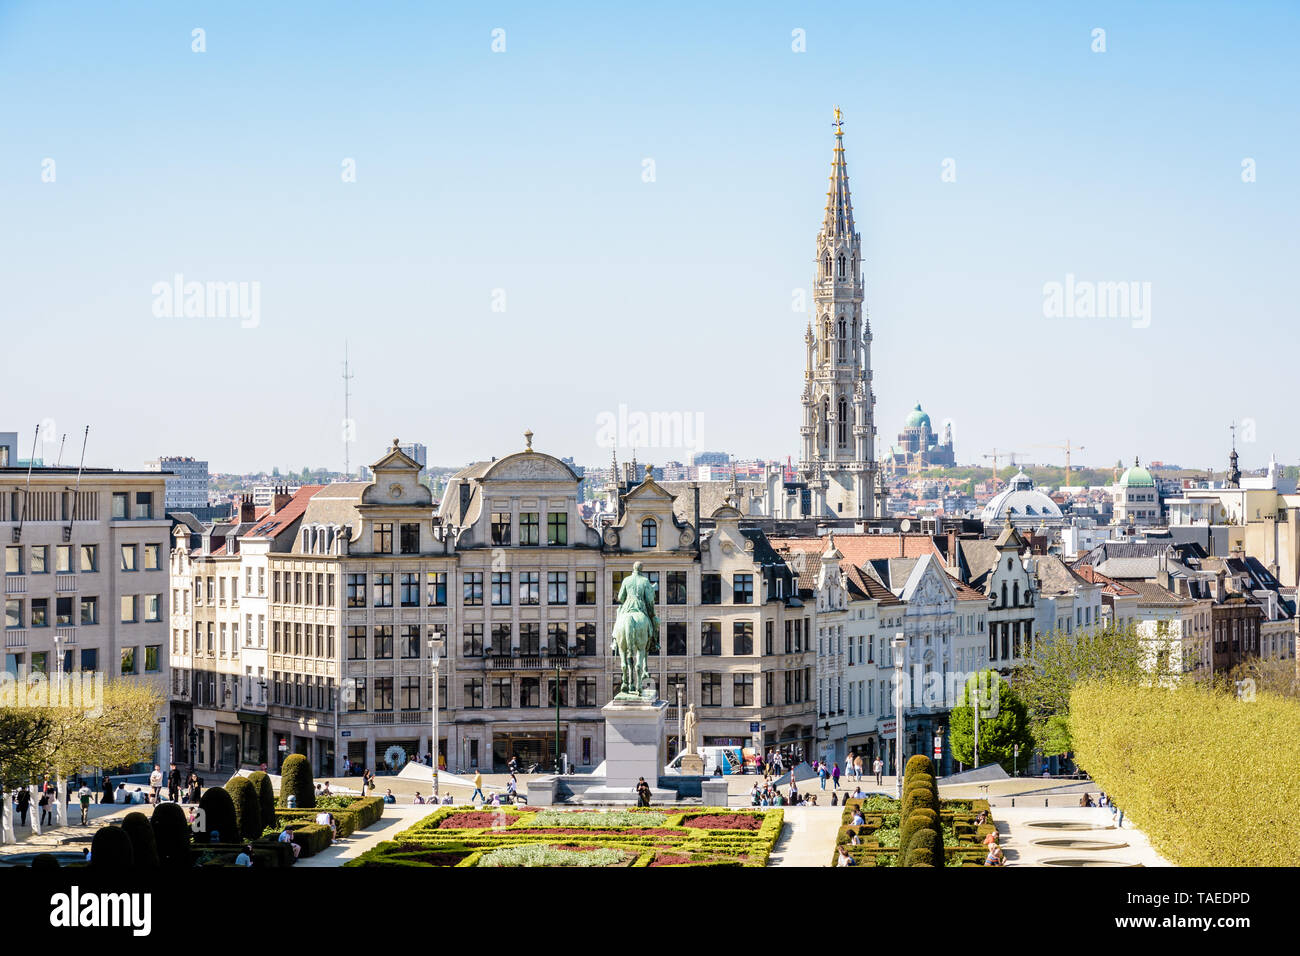 Vue depuis le Mont des Arts sur le jardin, la vieille ville et le beffroi de l'hôtel de ville de Bruxelles, Belgique. Banque D'Images